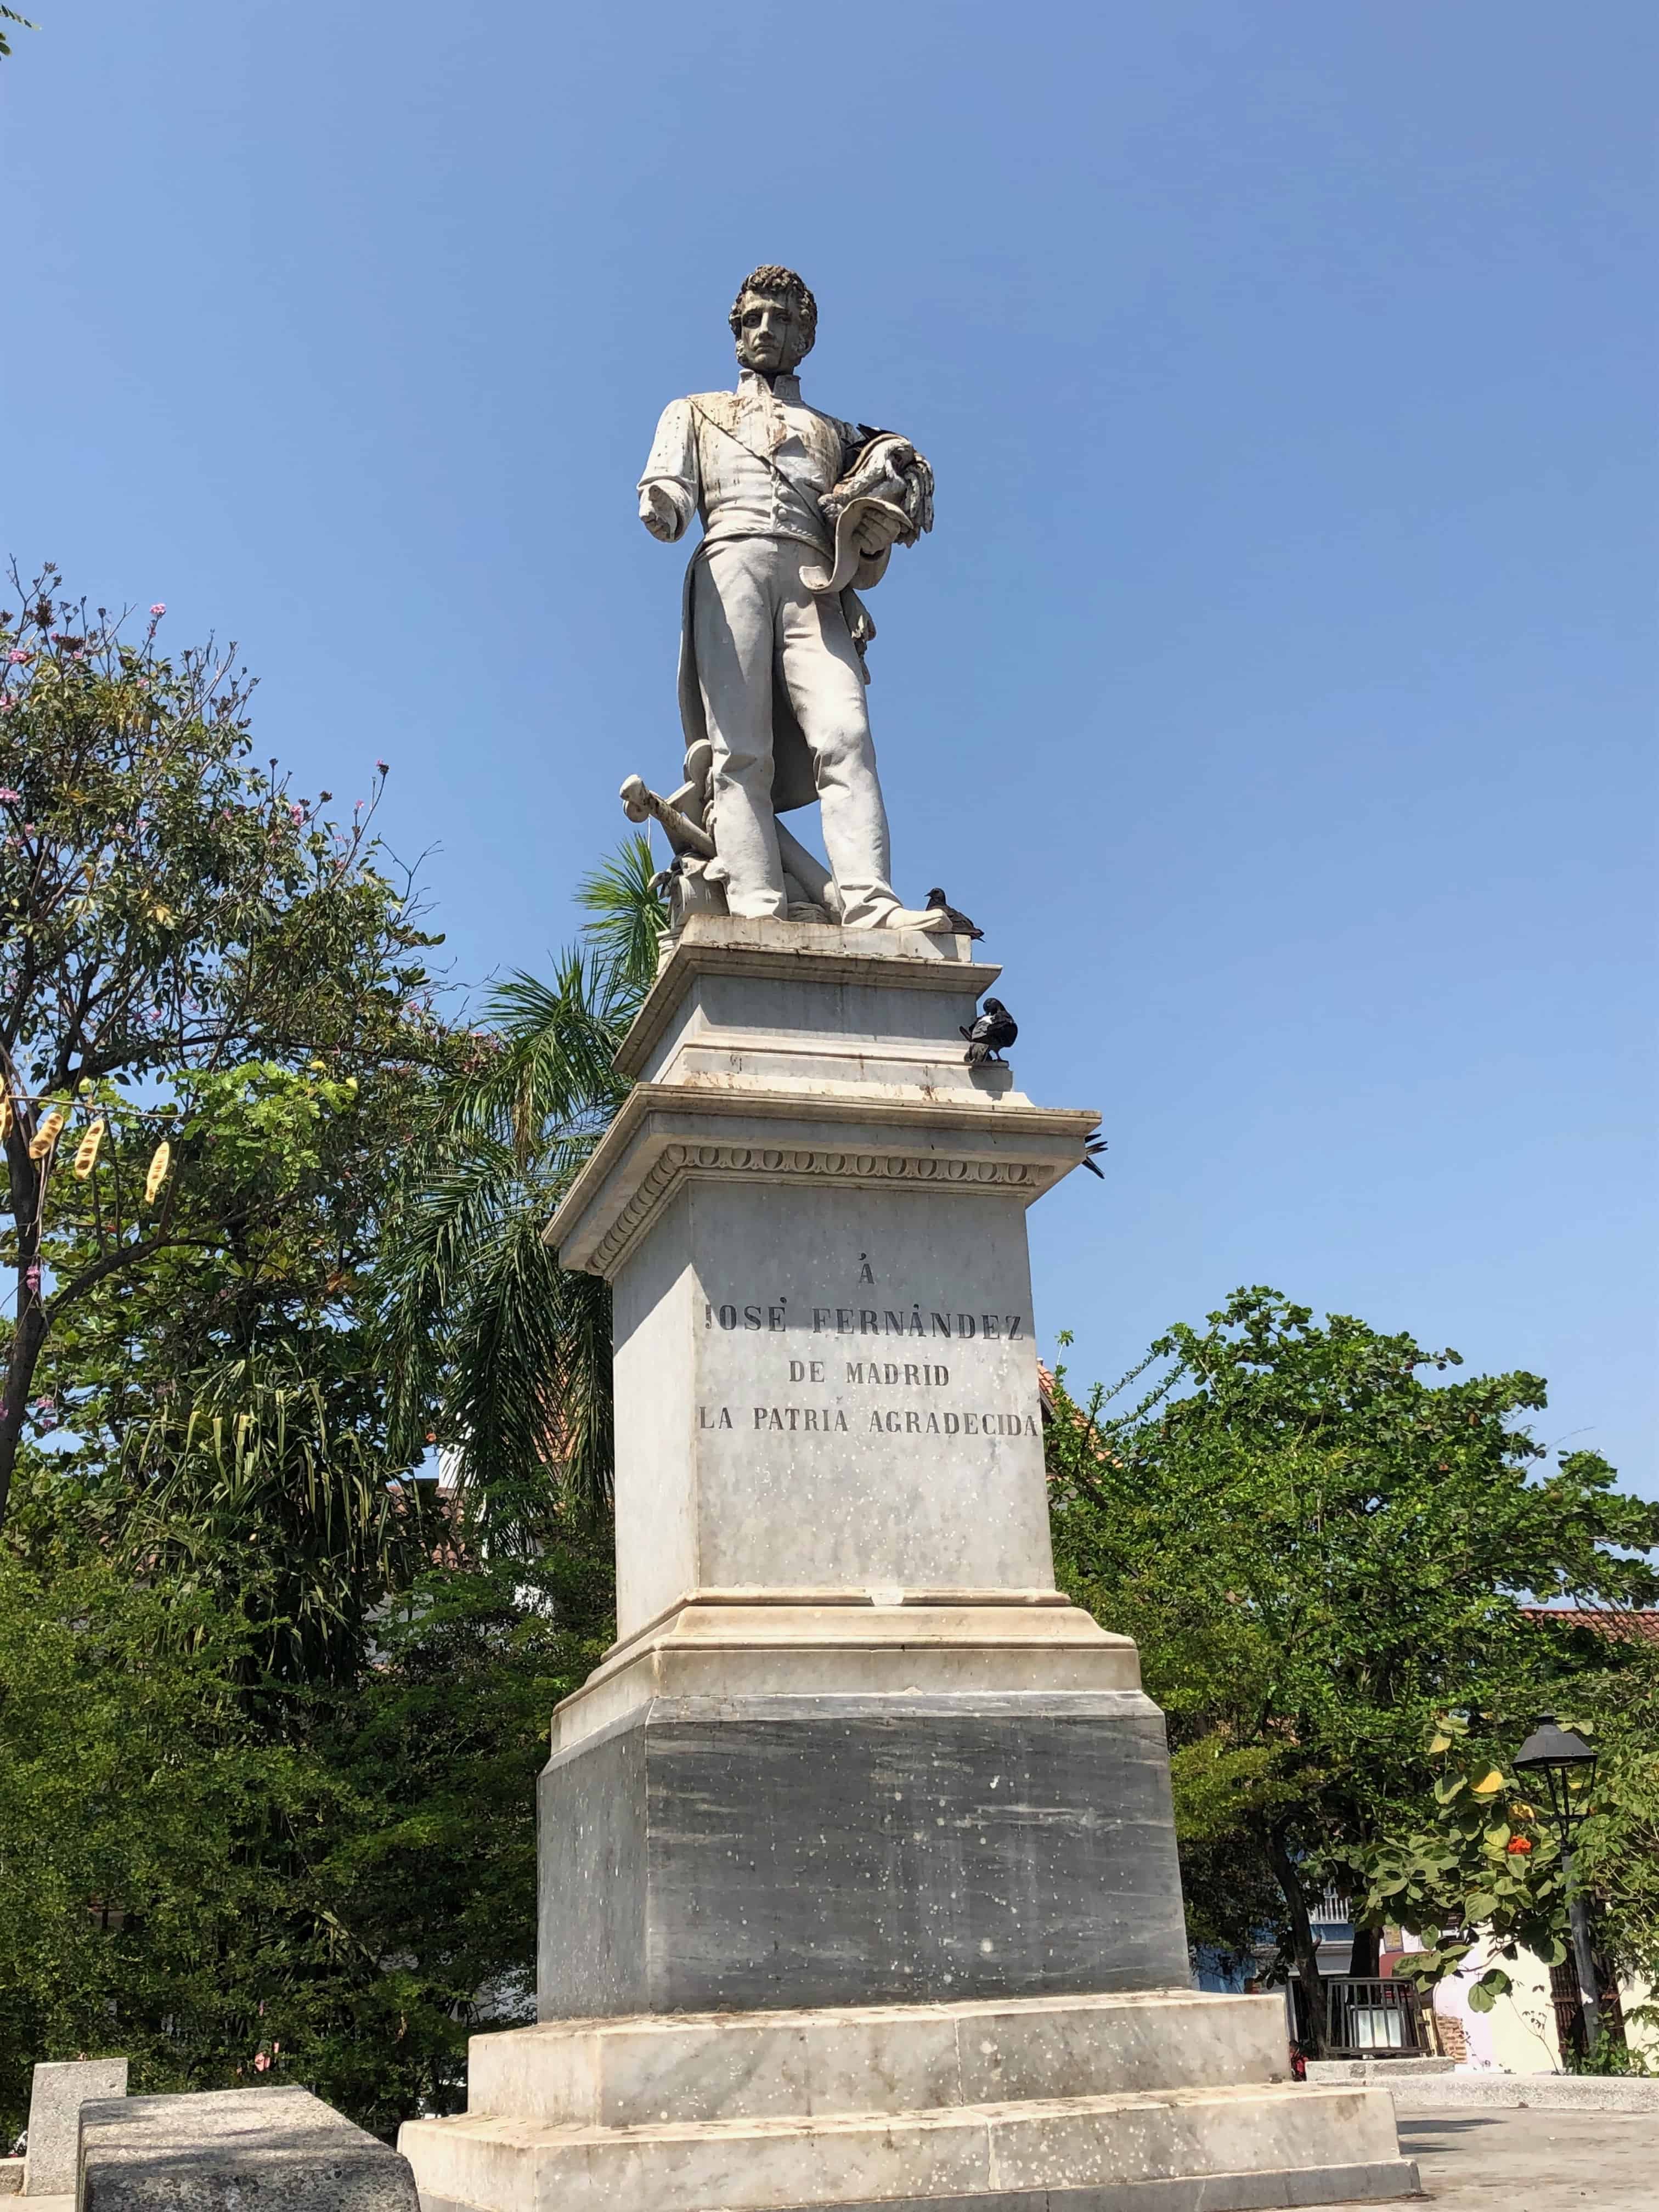 José Fernández de Madrid monument at Plaza Fernández de Madrid in San Diego, Cartagena, Colombia